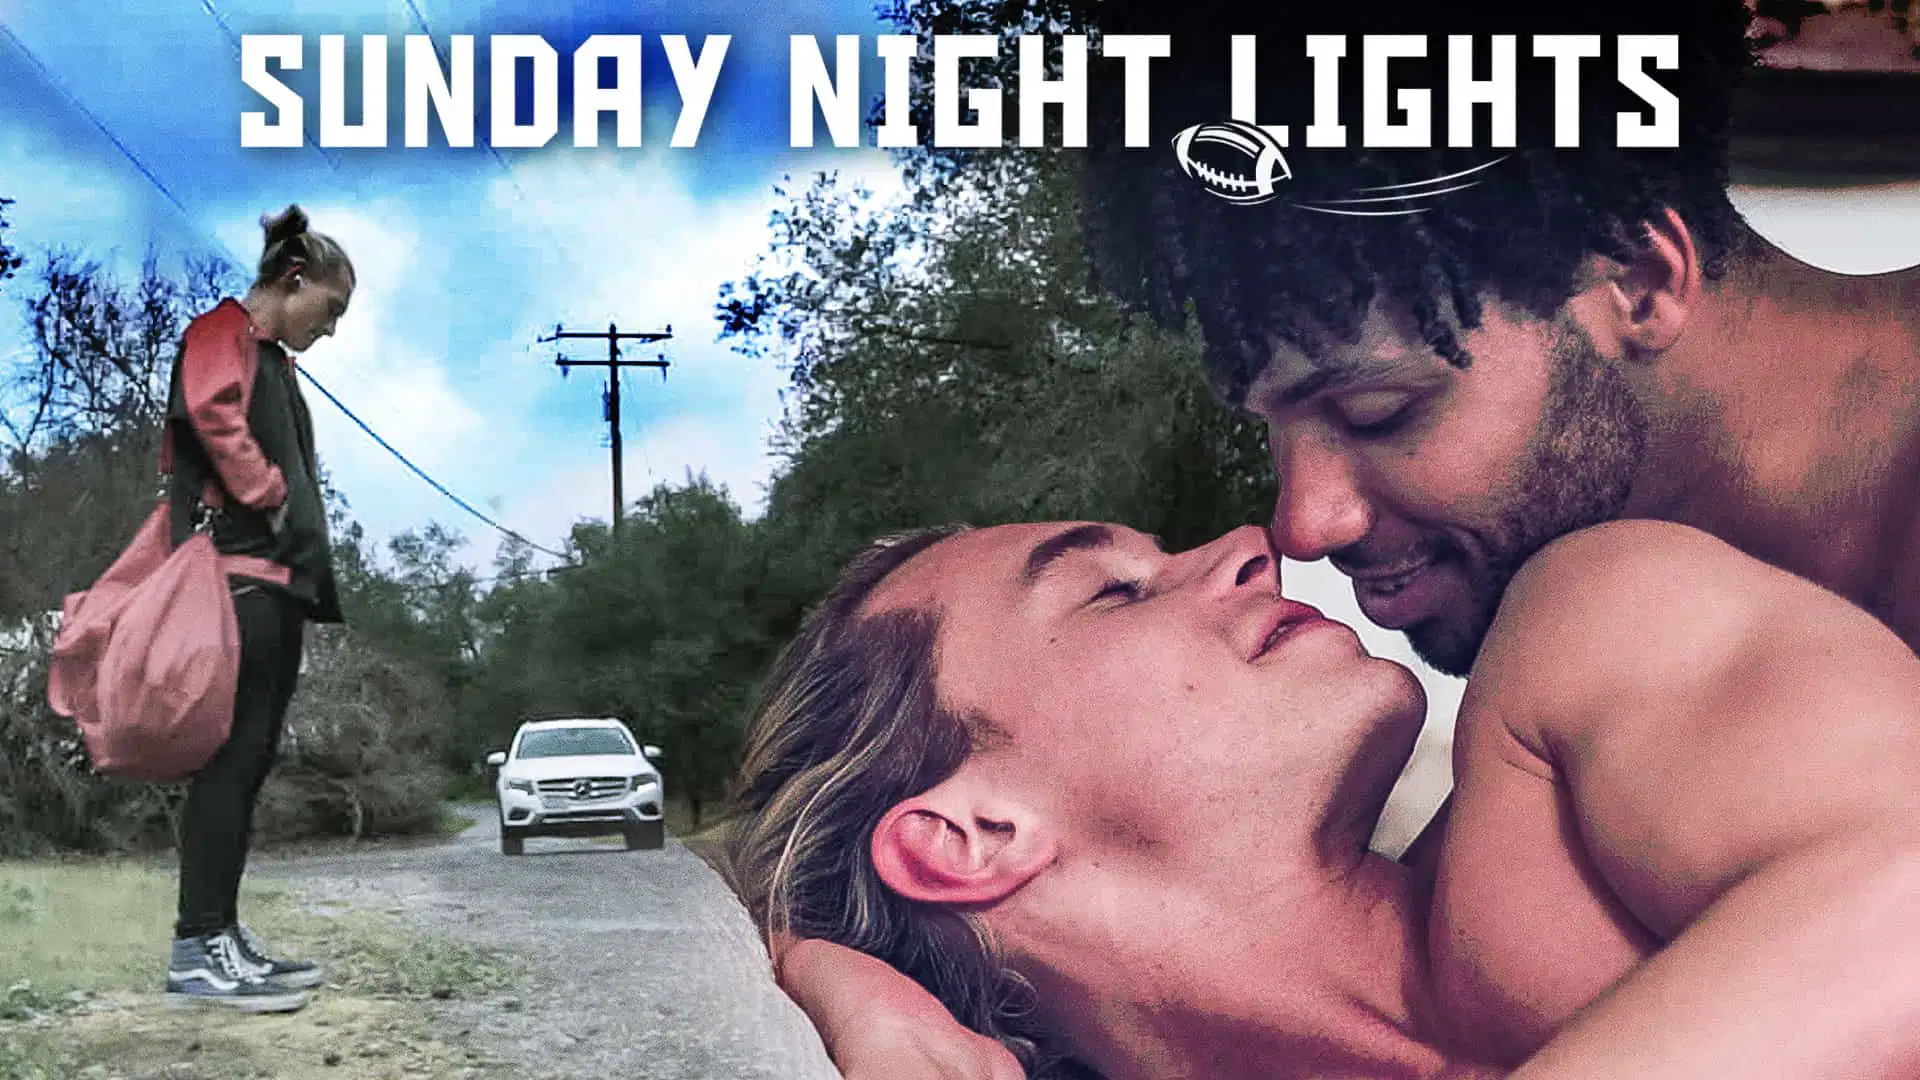 Sunday Night Lights – Johnny Moon and Tony Genius